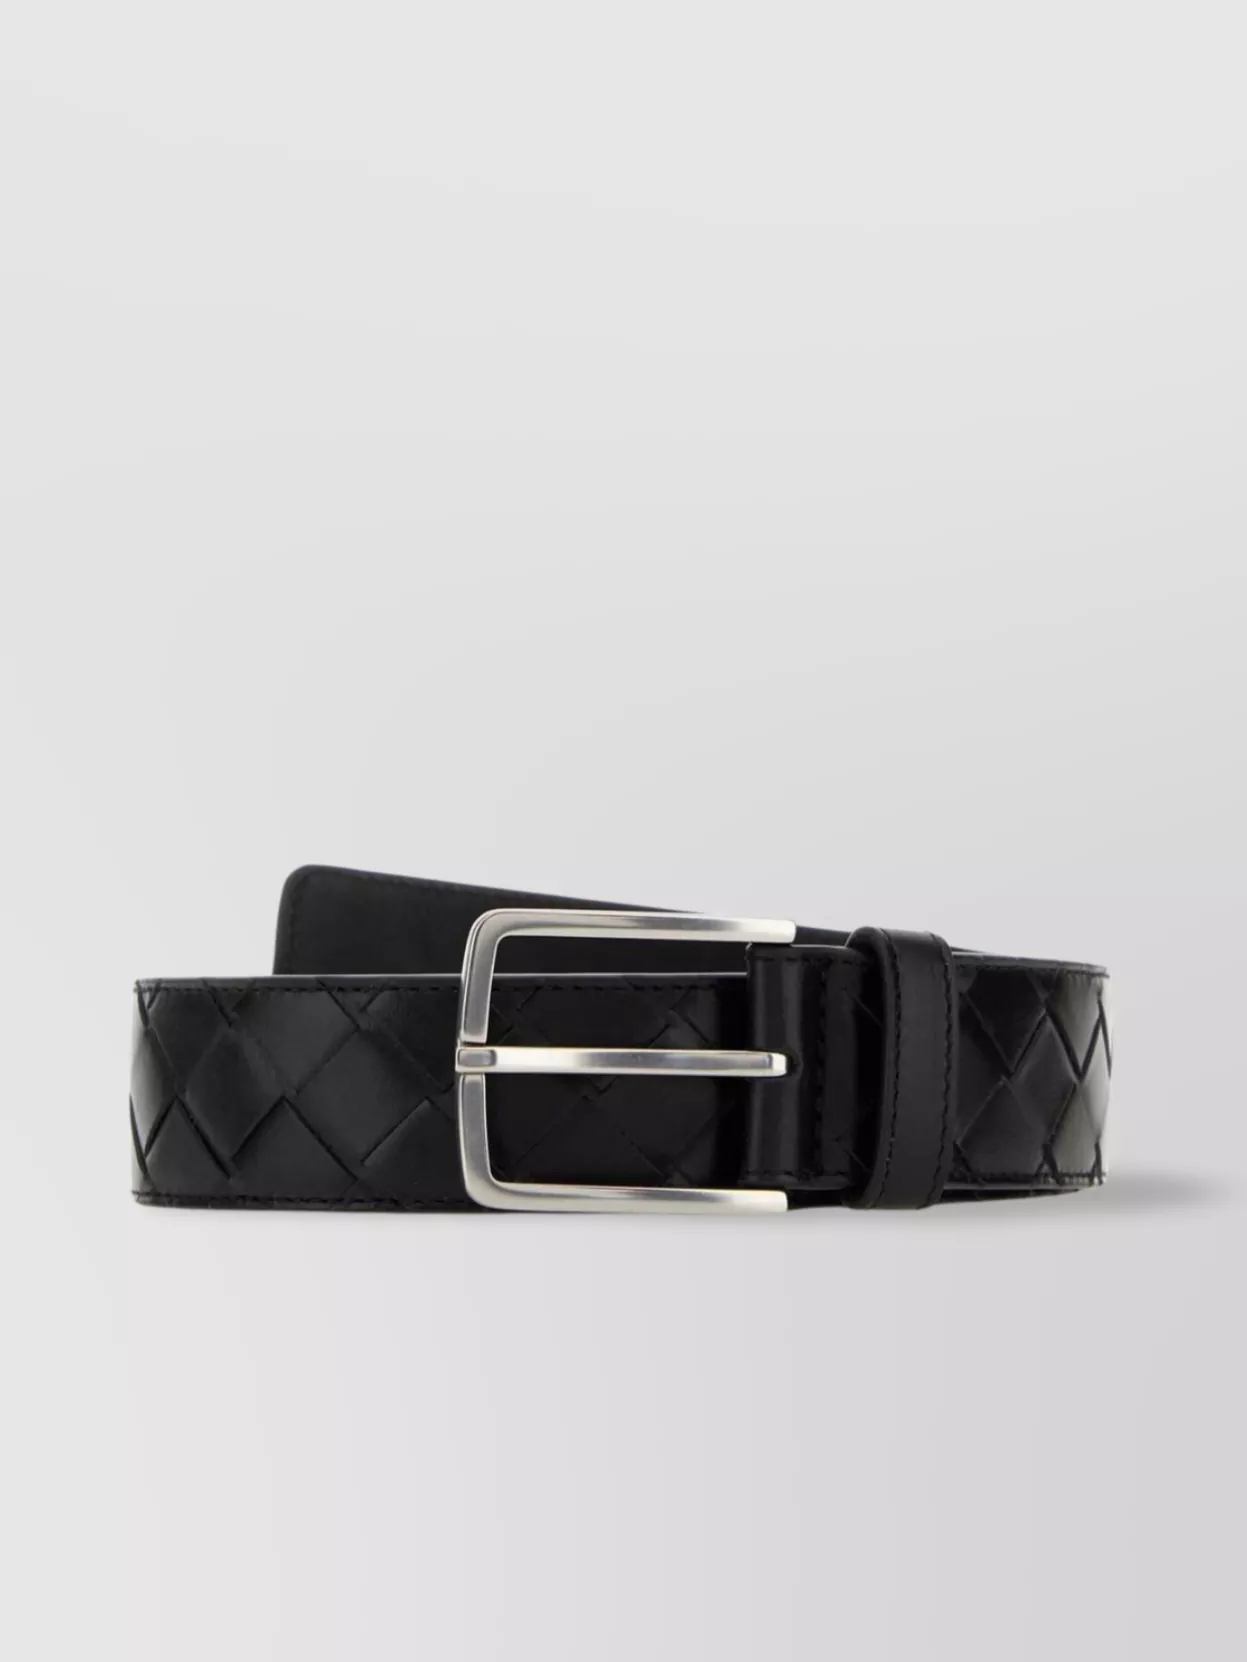 Shop Bottega Veneta Leather Belt With Adjustable Length And Quilted Design